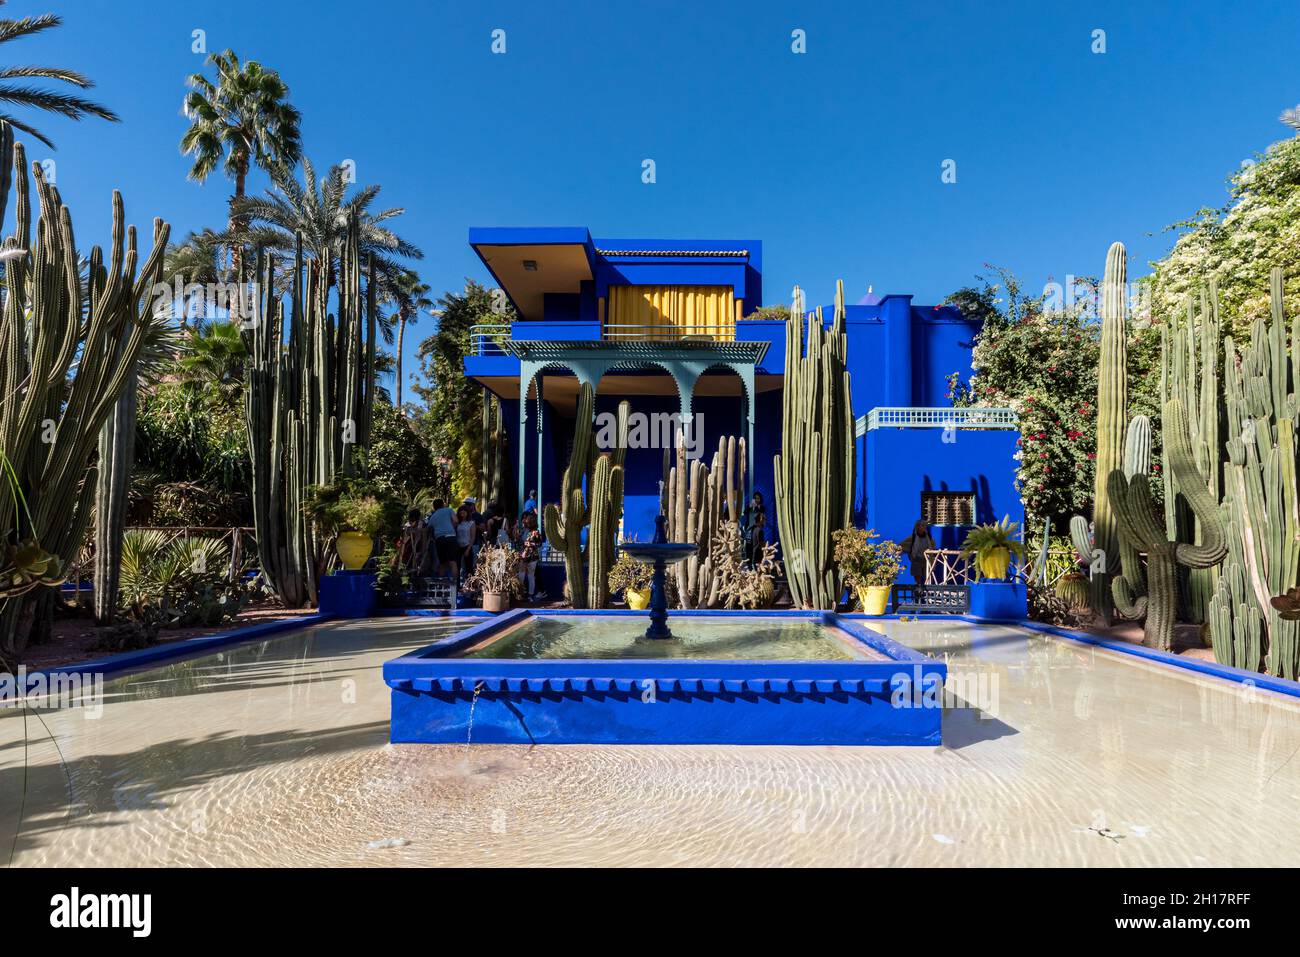 Le jardin Majorelle, Marrakech, Maroc - 14 novembre 2017 : magnifique architecture bleue du complexe de la villa et jardin botanique tropical construit en t Banque D'Images